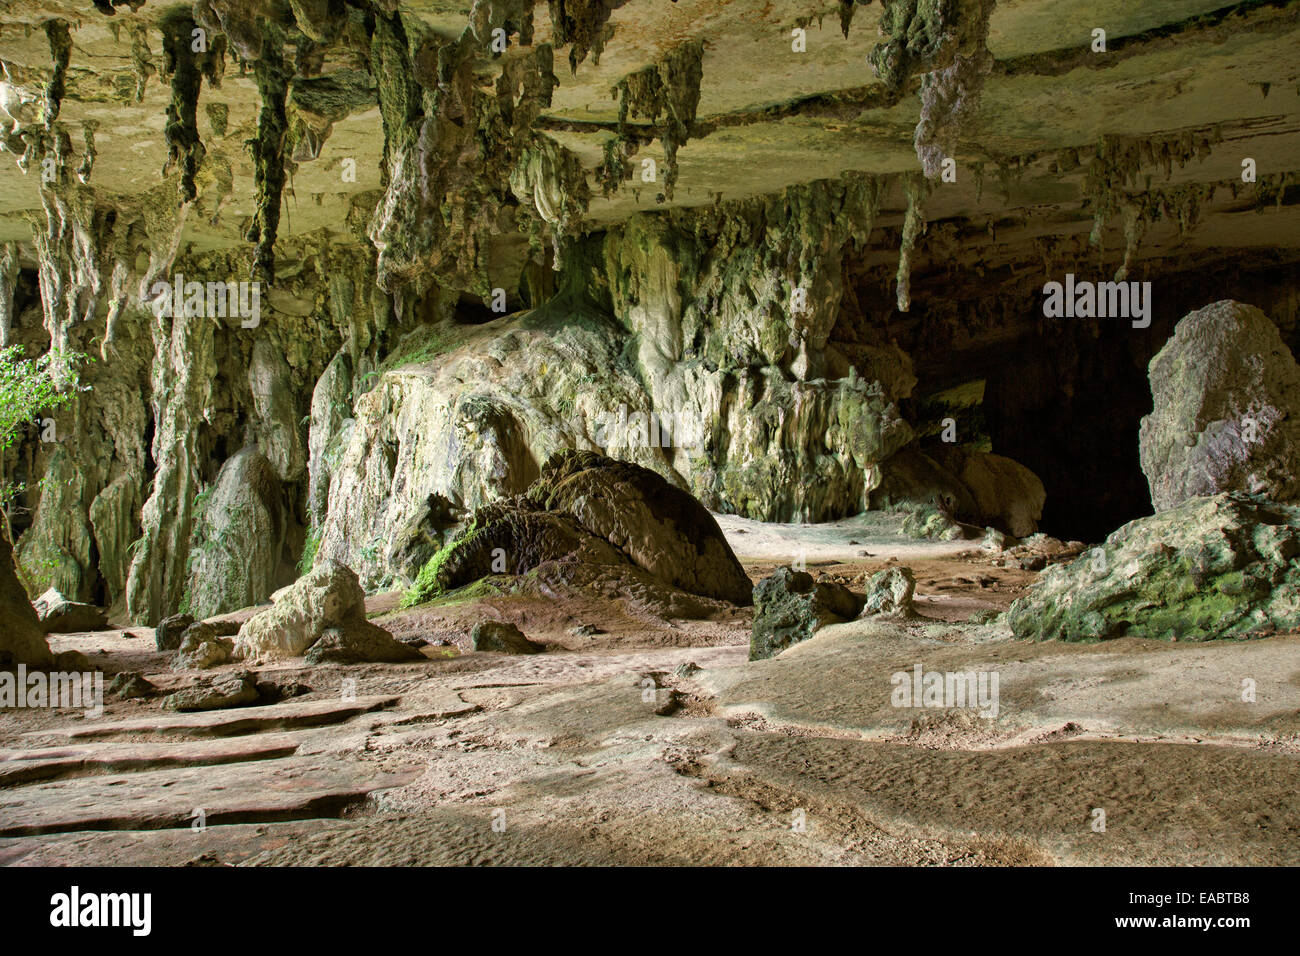 Painted Cave, Niah National Park, Sarawak, Malaysia Stock Photo